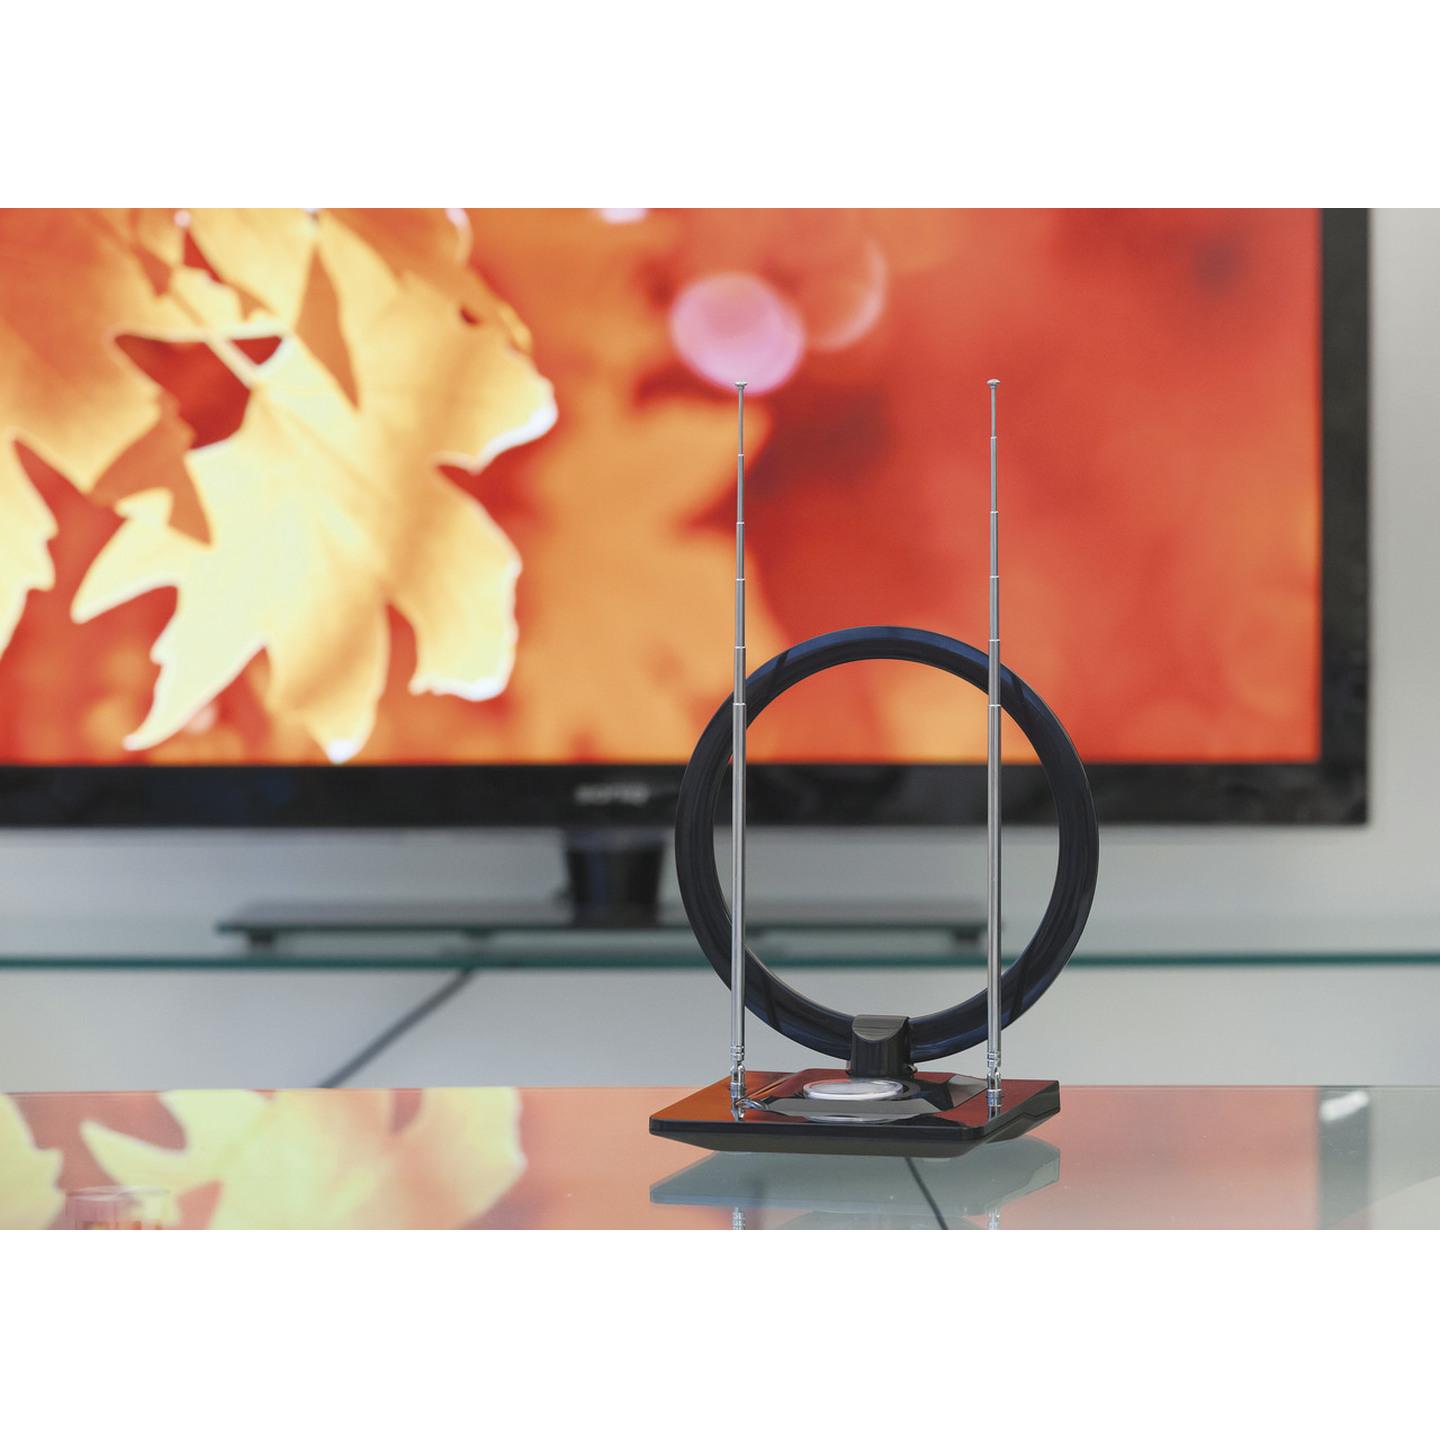 Slim Digital TV Indoor Antenna with Amplifier